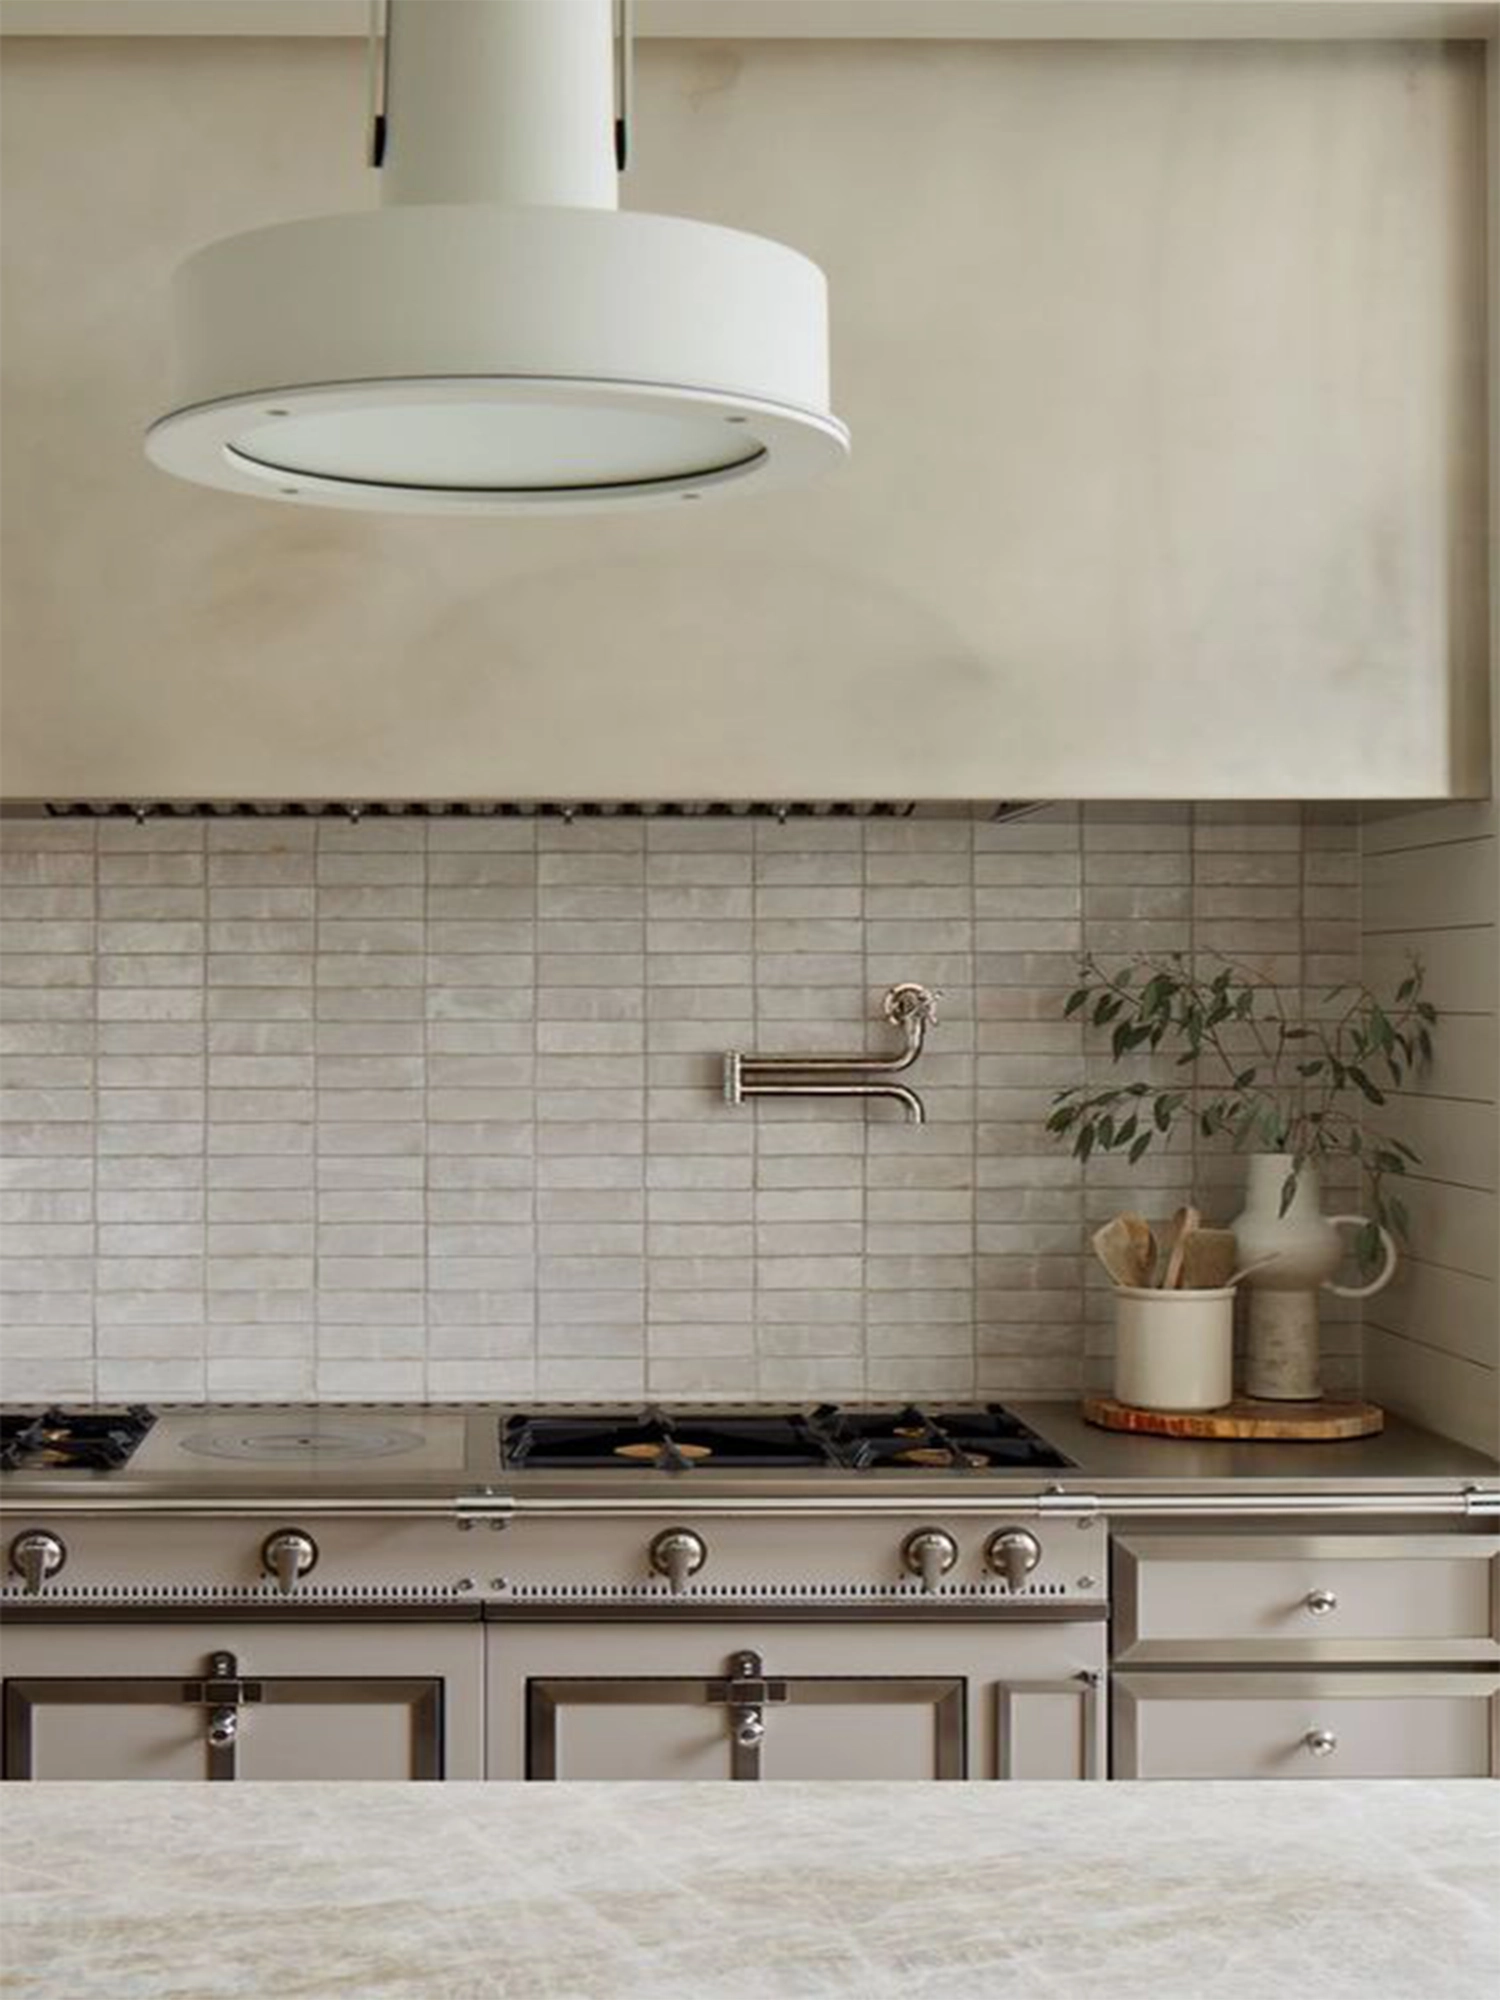 luxury kitchen design with a La Cornue Chateau gas range by Granite Bay interior designer